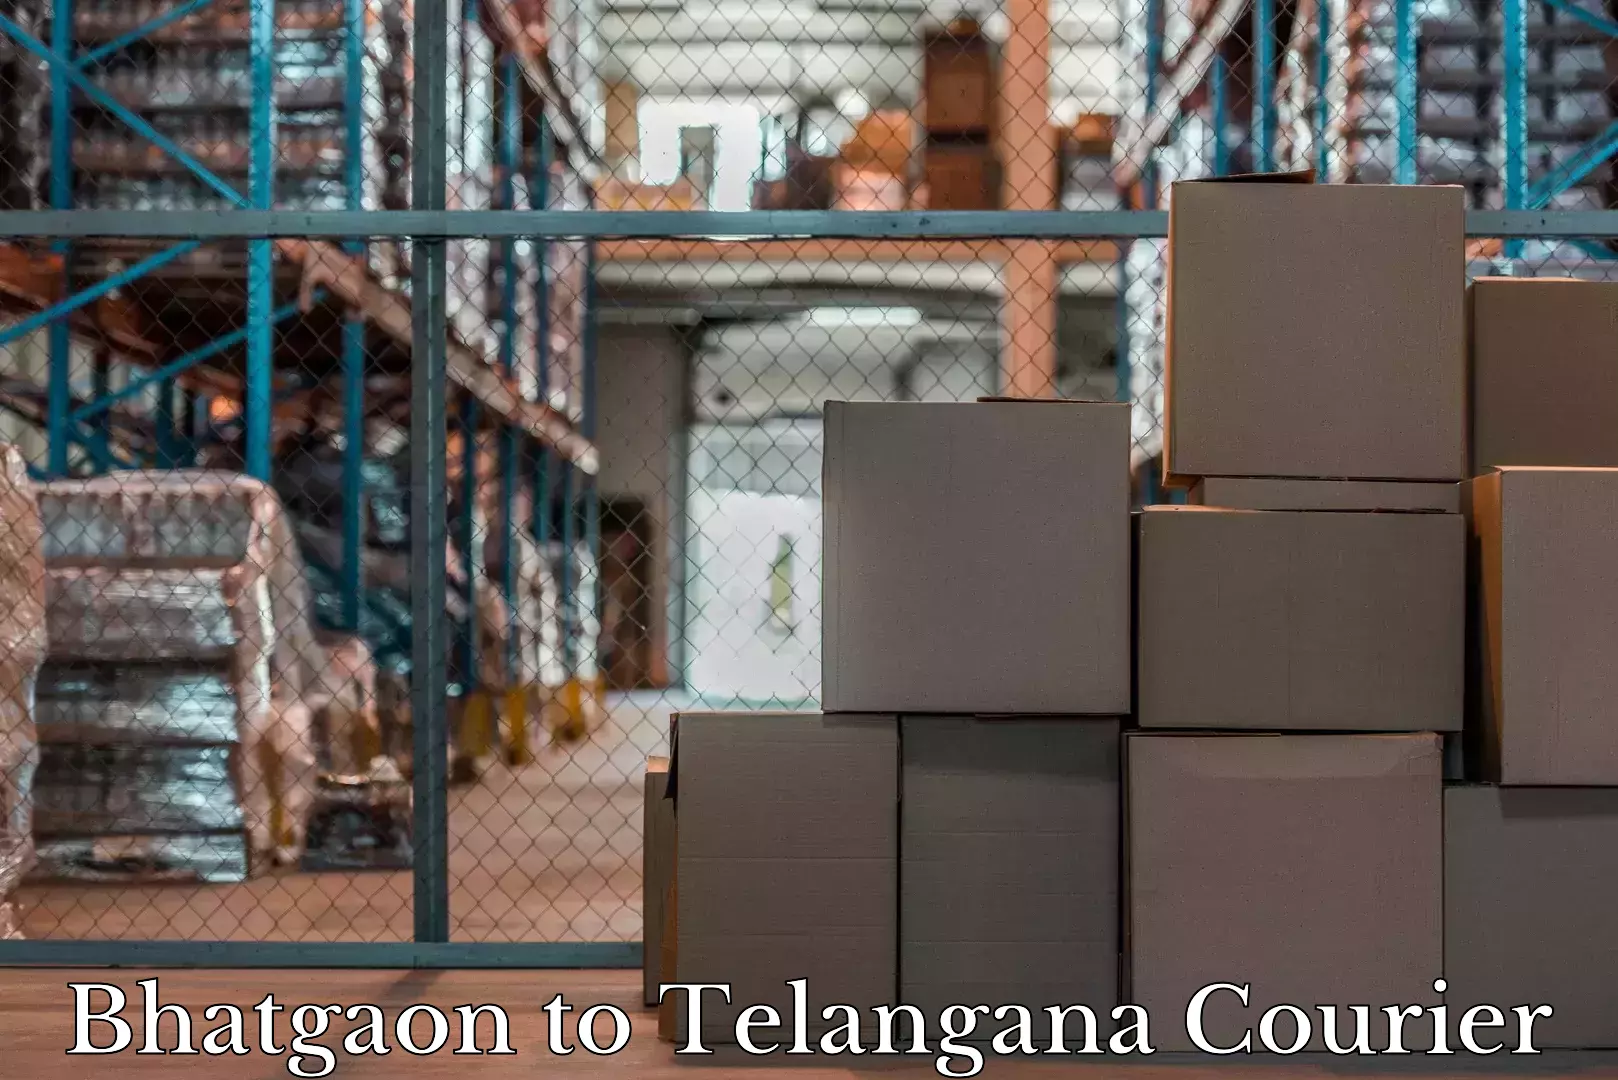 Luggage shipment specialists Bhatgaon to Kamalapur